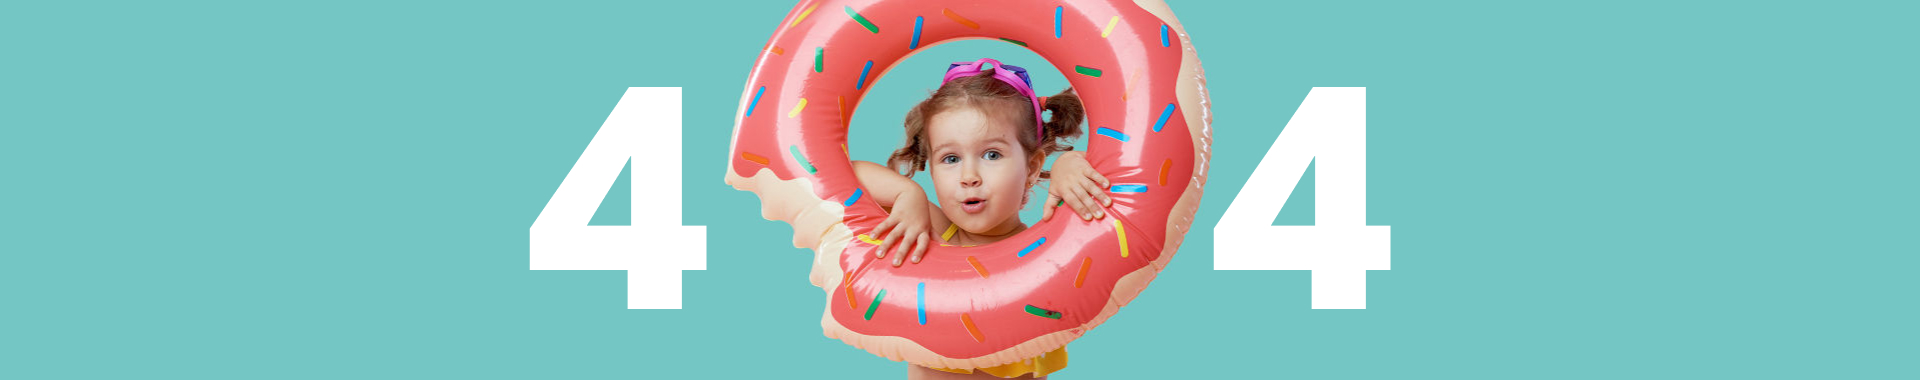 Image d'une petite fille avec une bouée donut représentant le 0 du 404